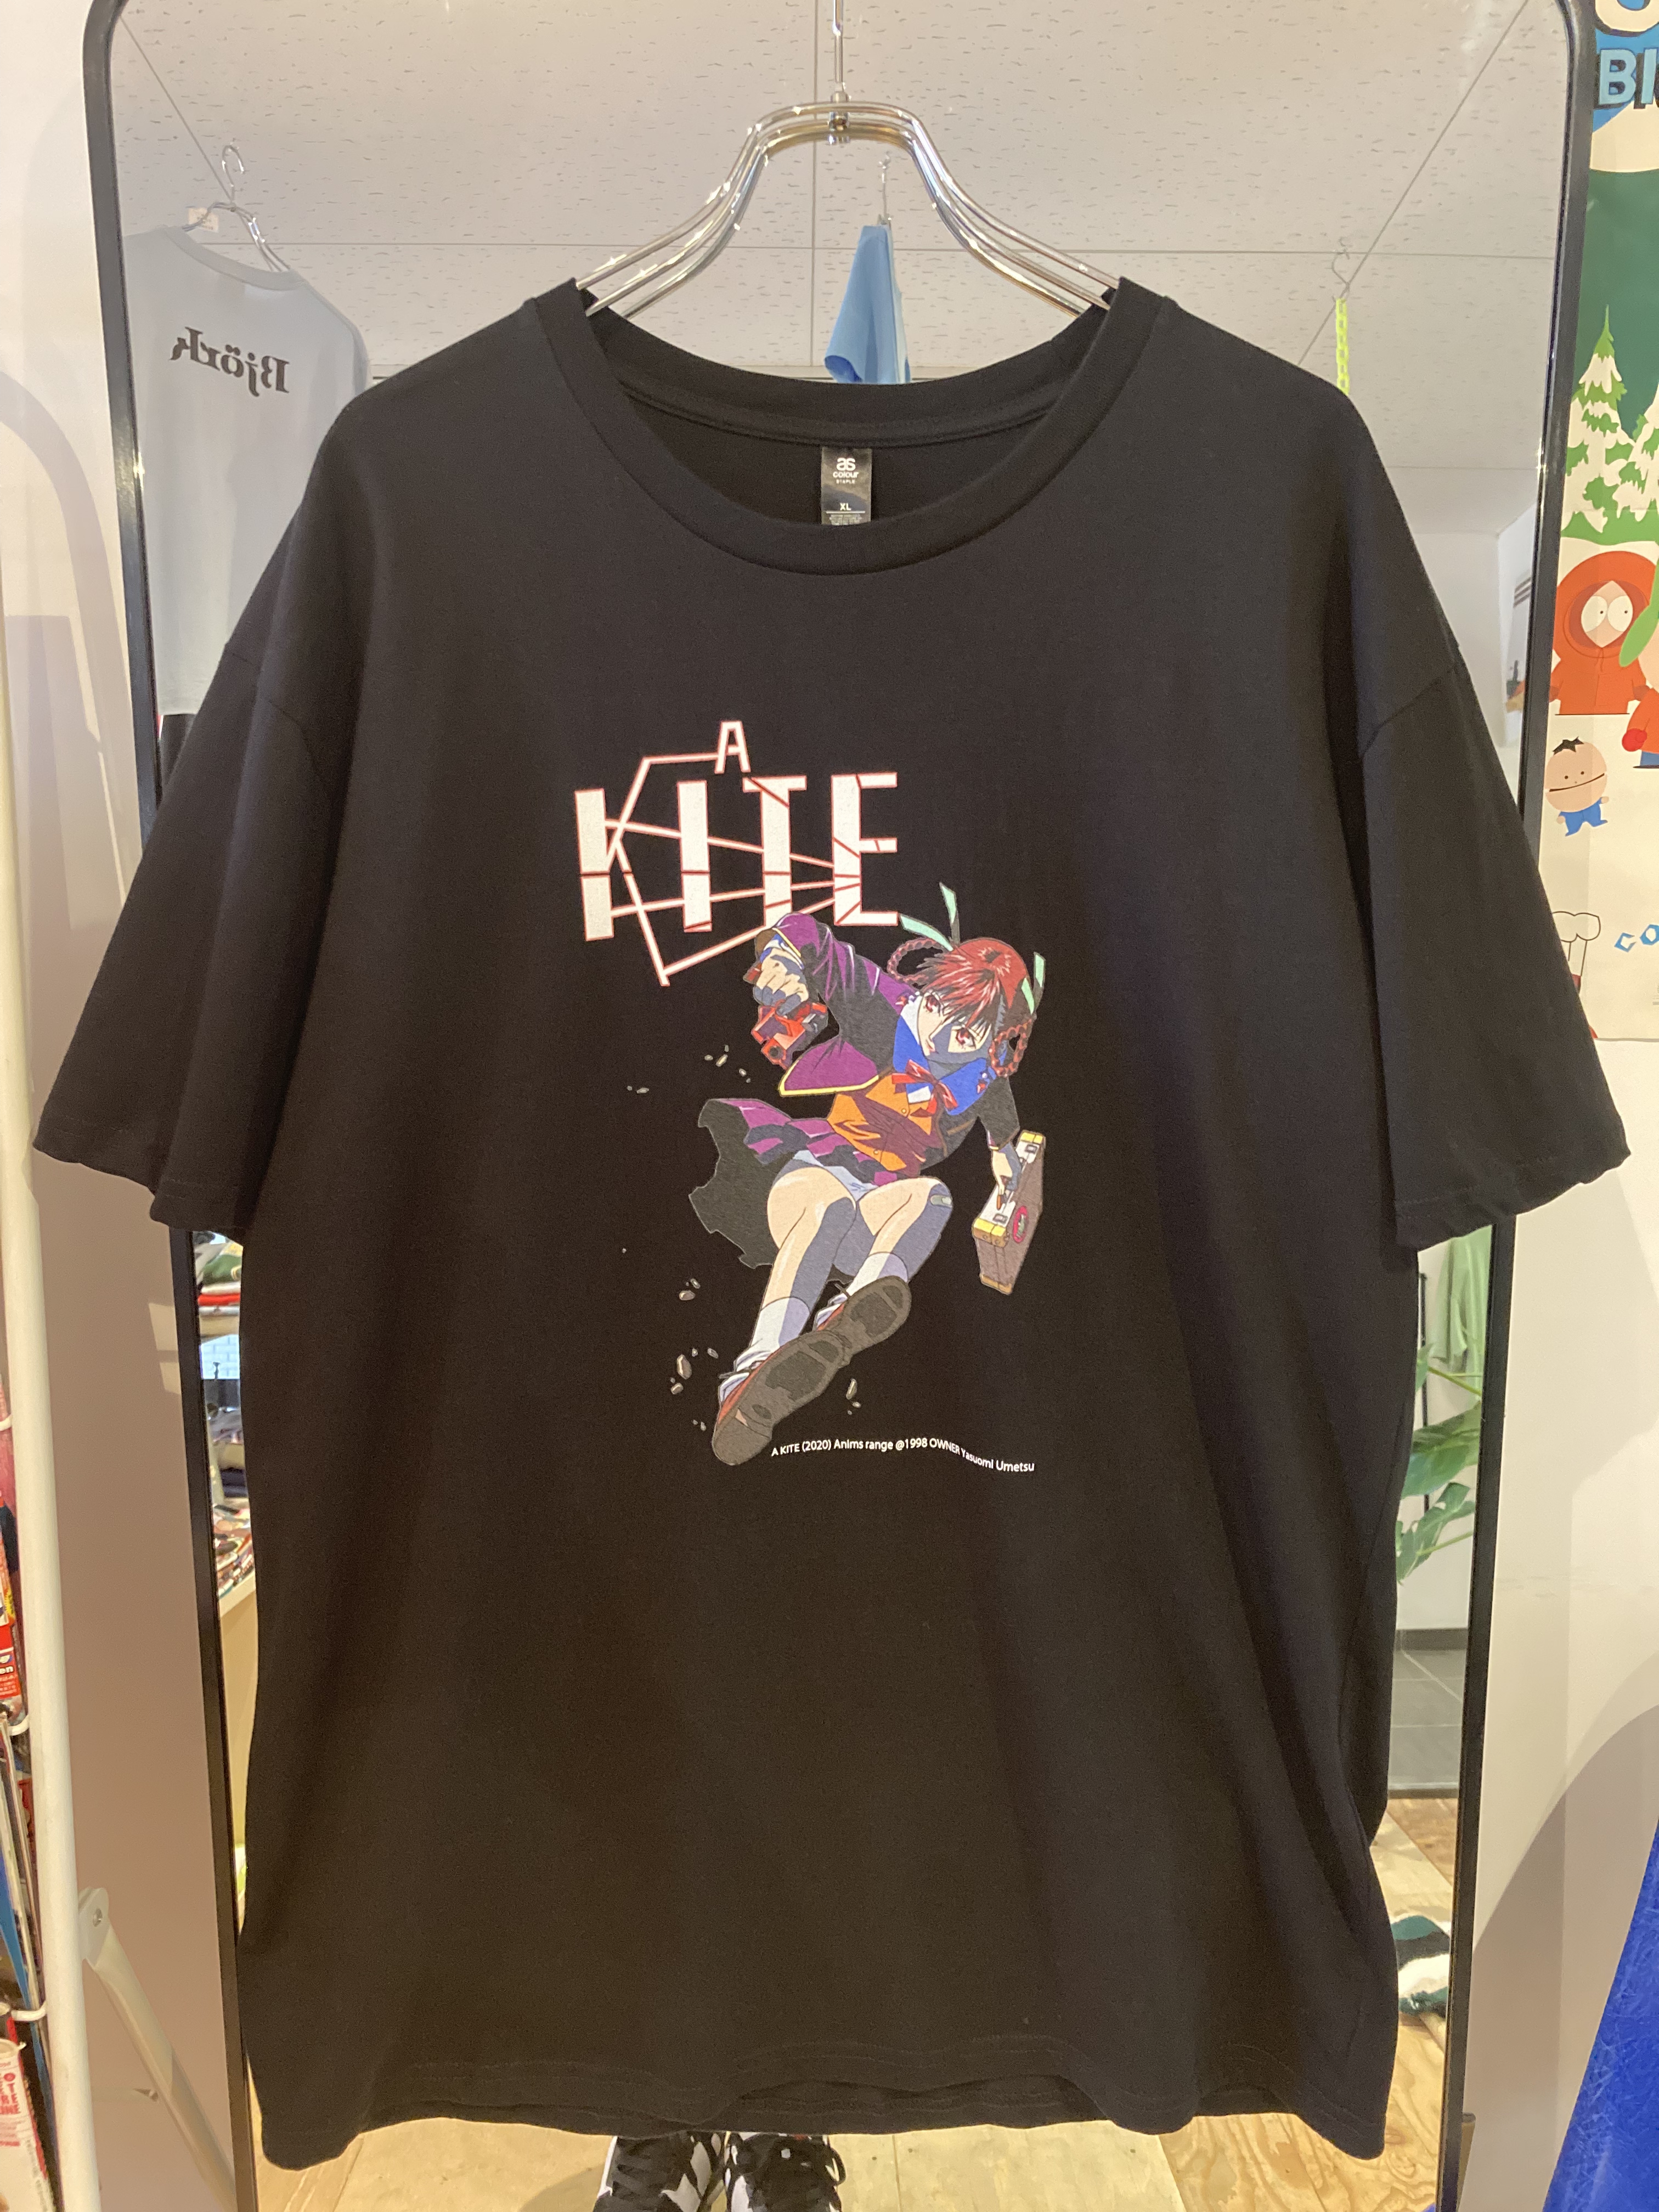 [スペシャル/デッドストック/90s/XL]A KITE DVD/Tシャツセット